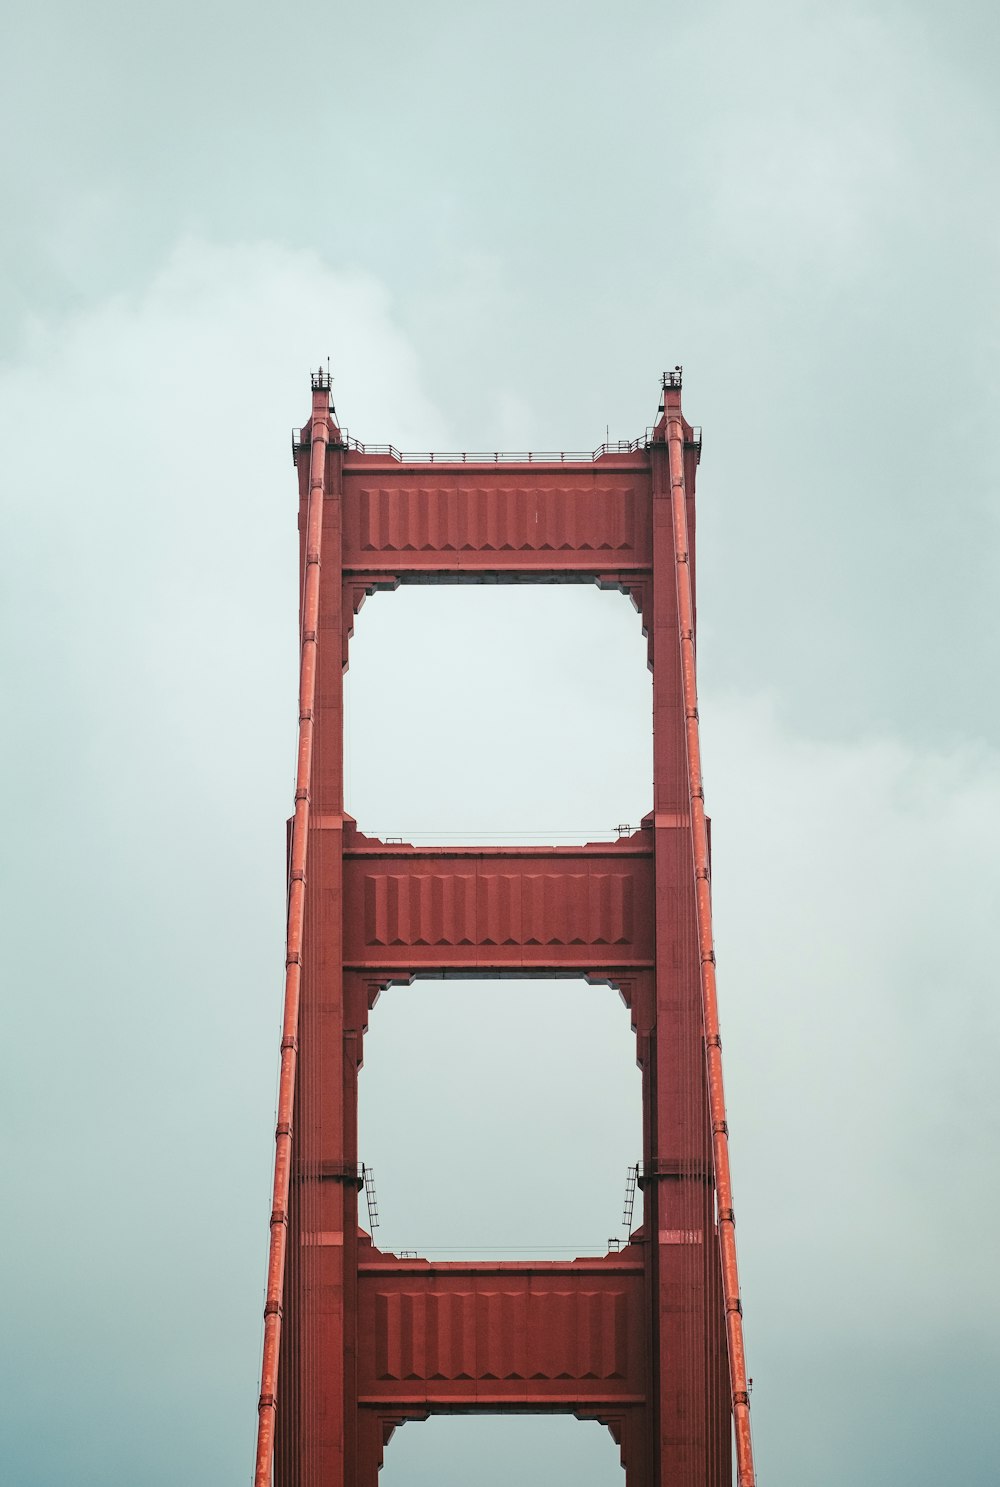 Puente Golden Gate de San Francisco